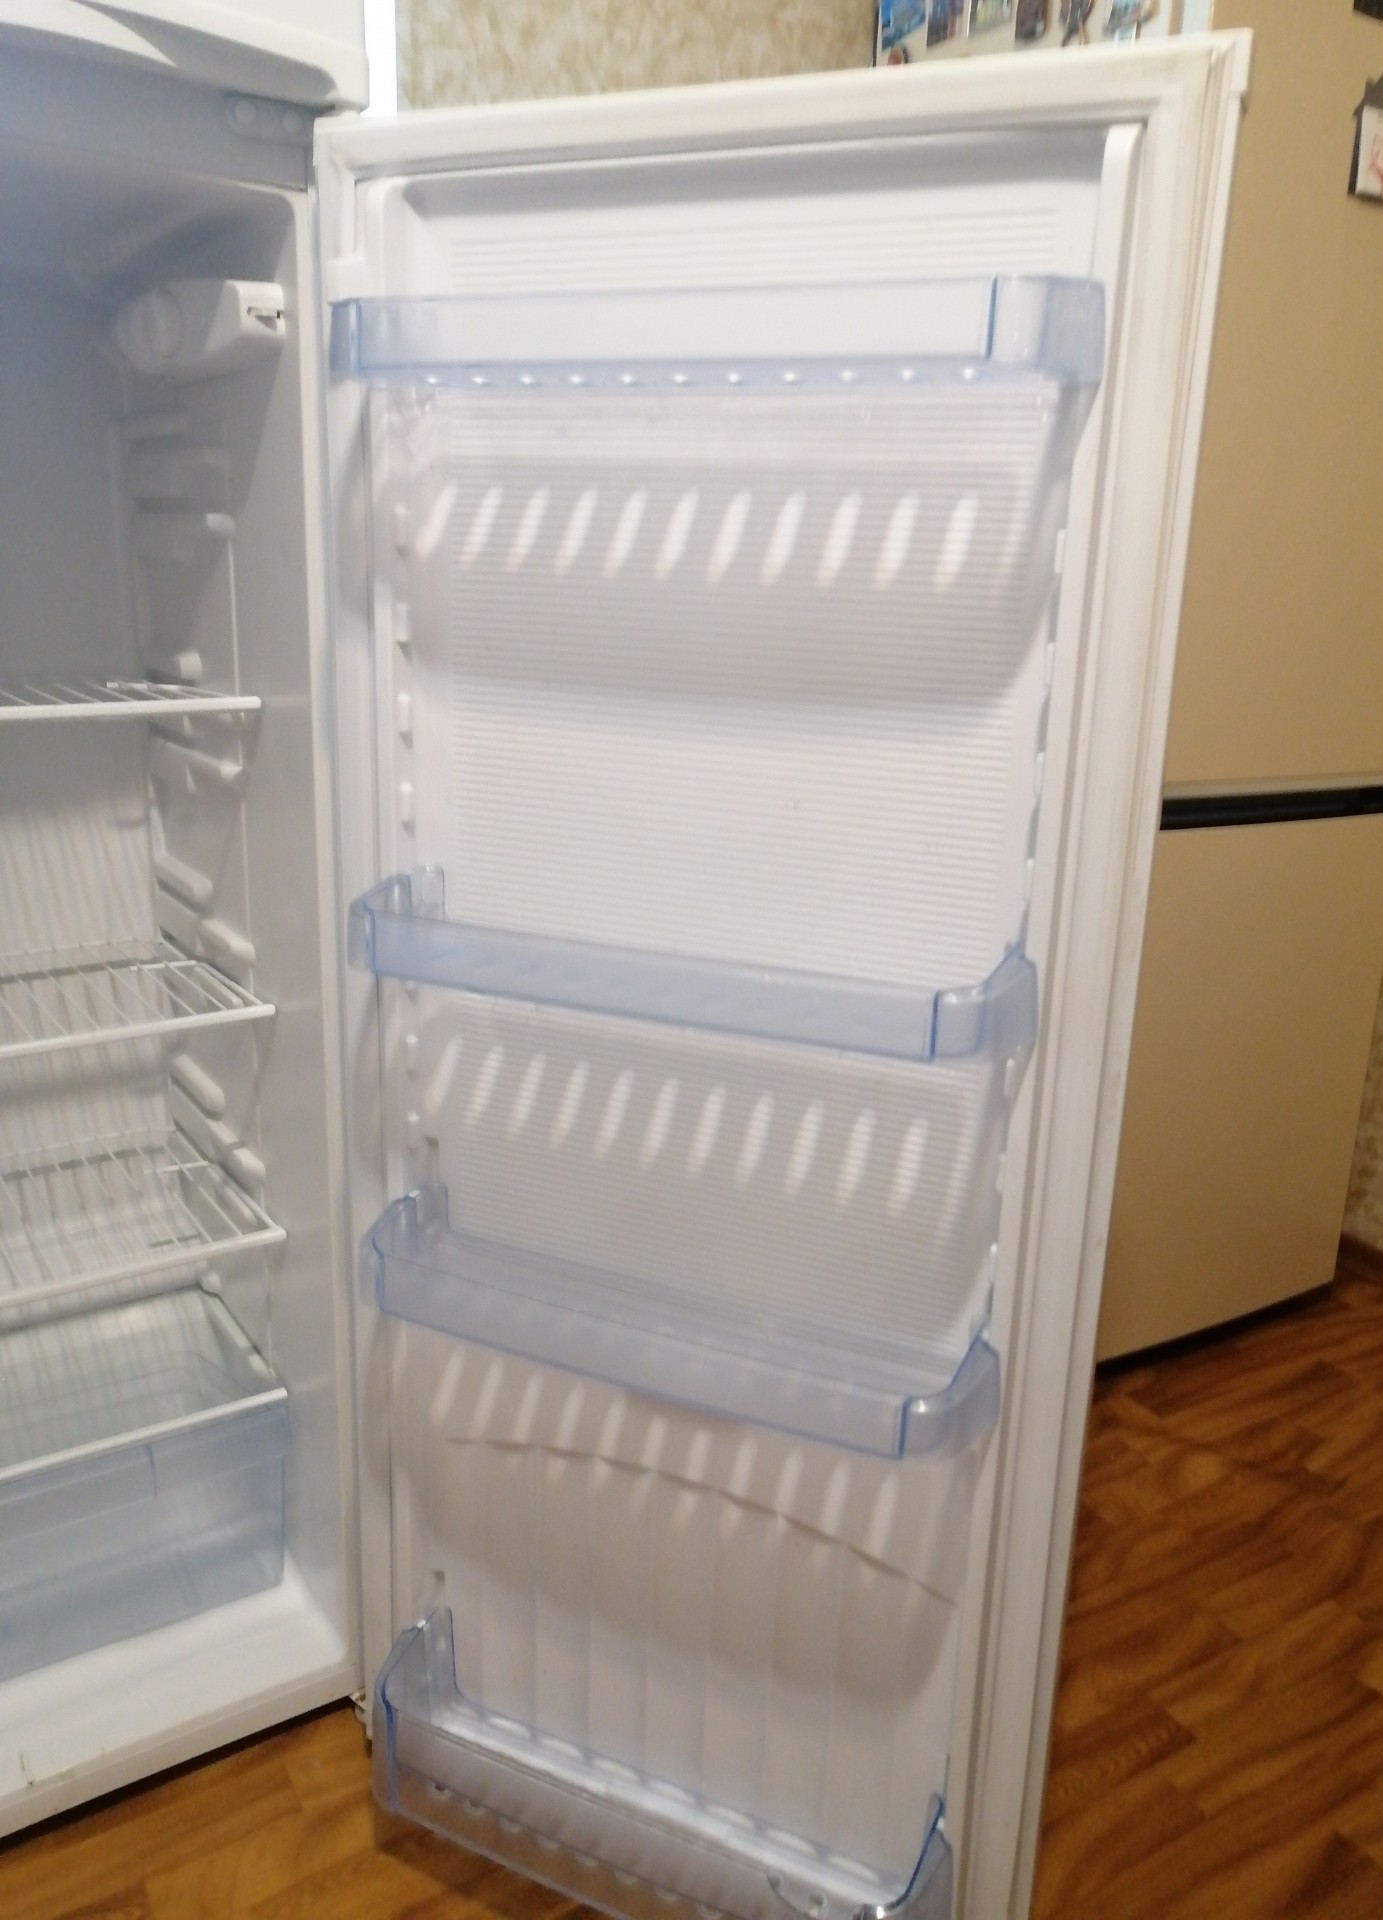 Как менялся холодильник. Холодильник Днепр ДХ-416-7-010 -. Днепр 2мс холодильник. Холодильник Днепр вес кг. Холодильник Днепр внутри.